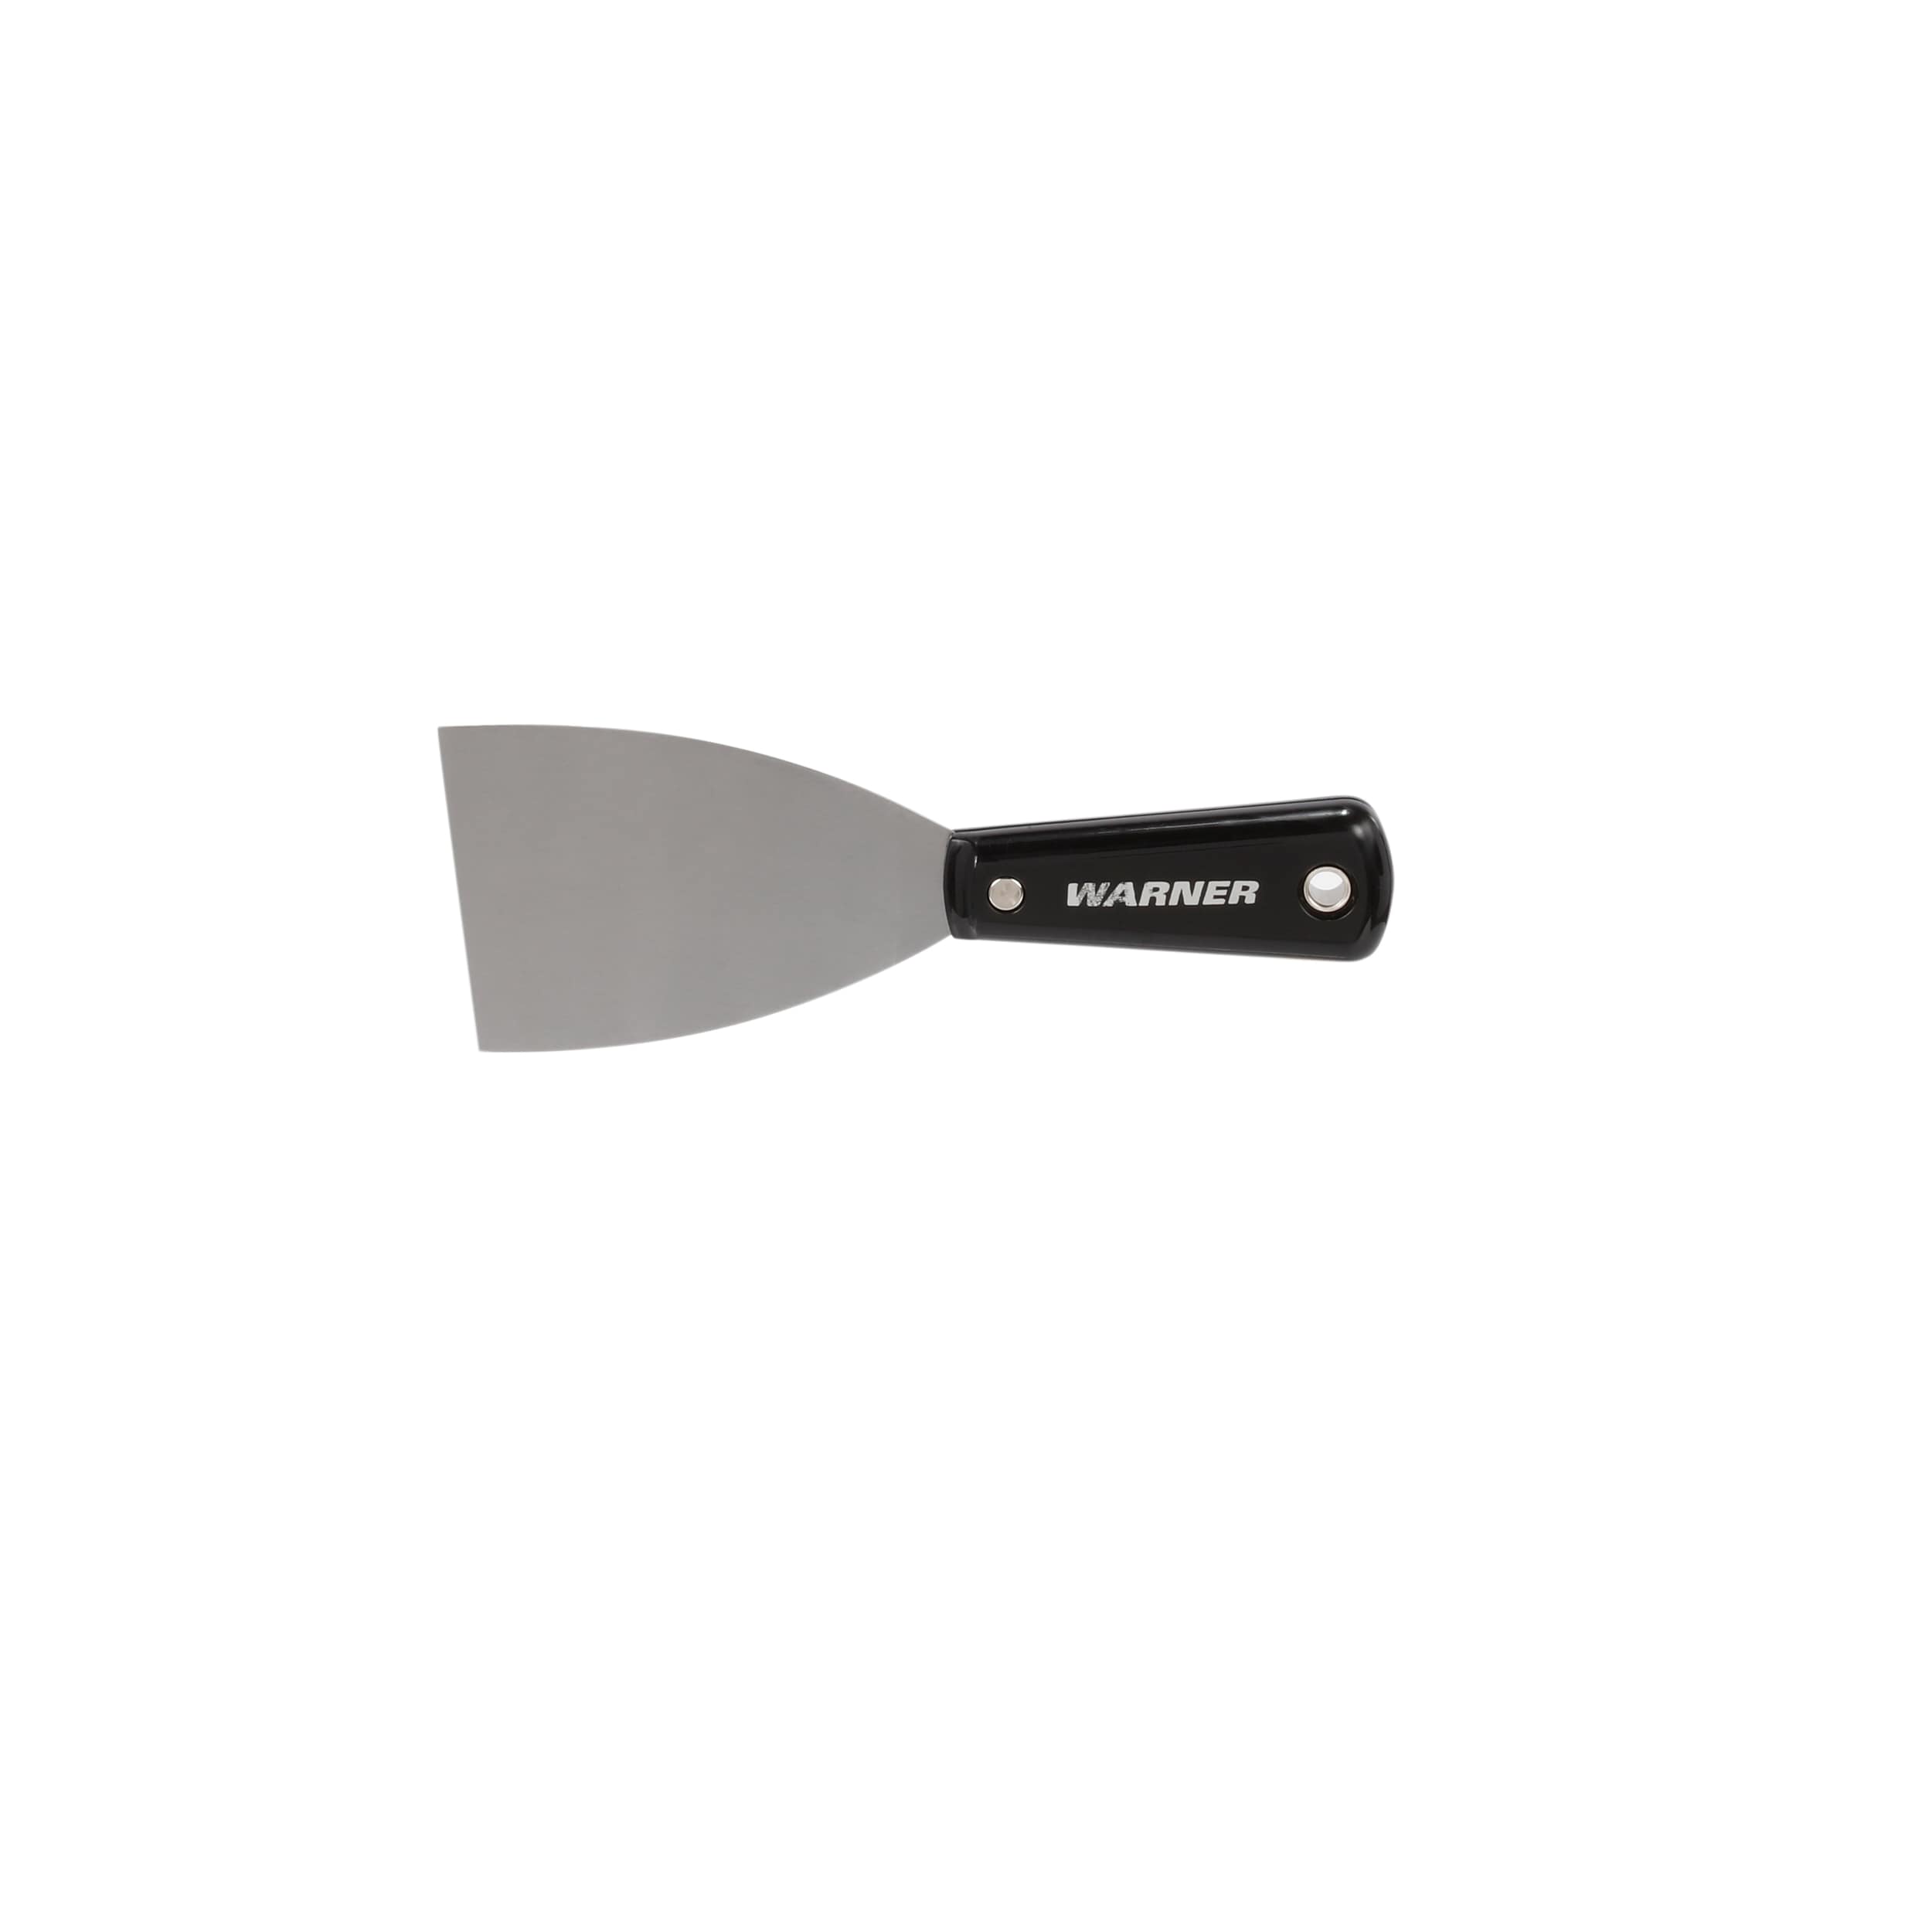 Warner 10322 Painter's Series Flex Putty Knife, 3-Inch